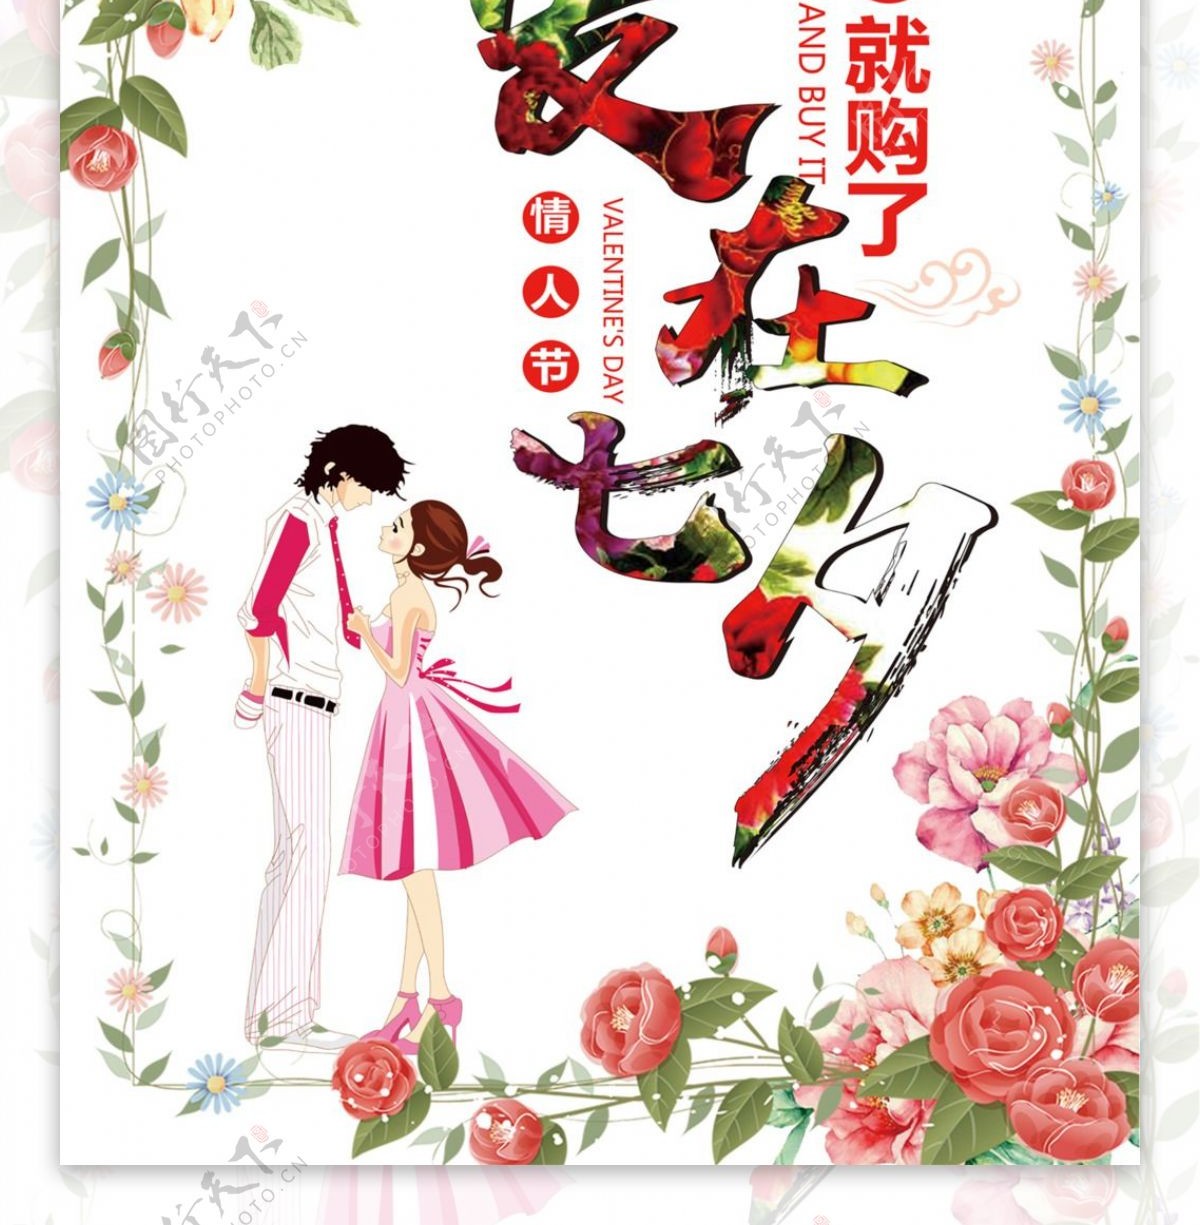 中国七夕节情人节情侣节平面海报设计